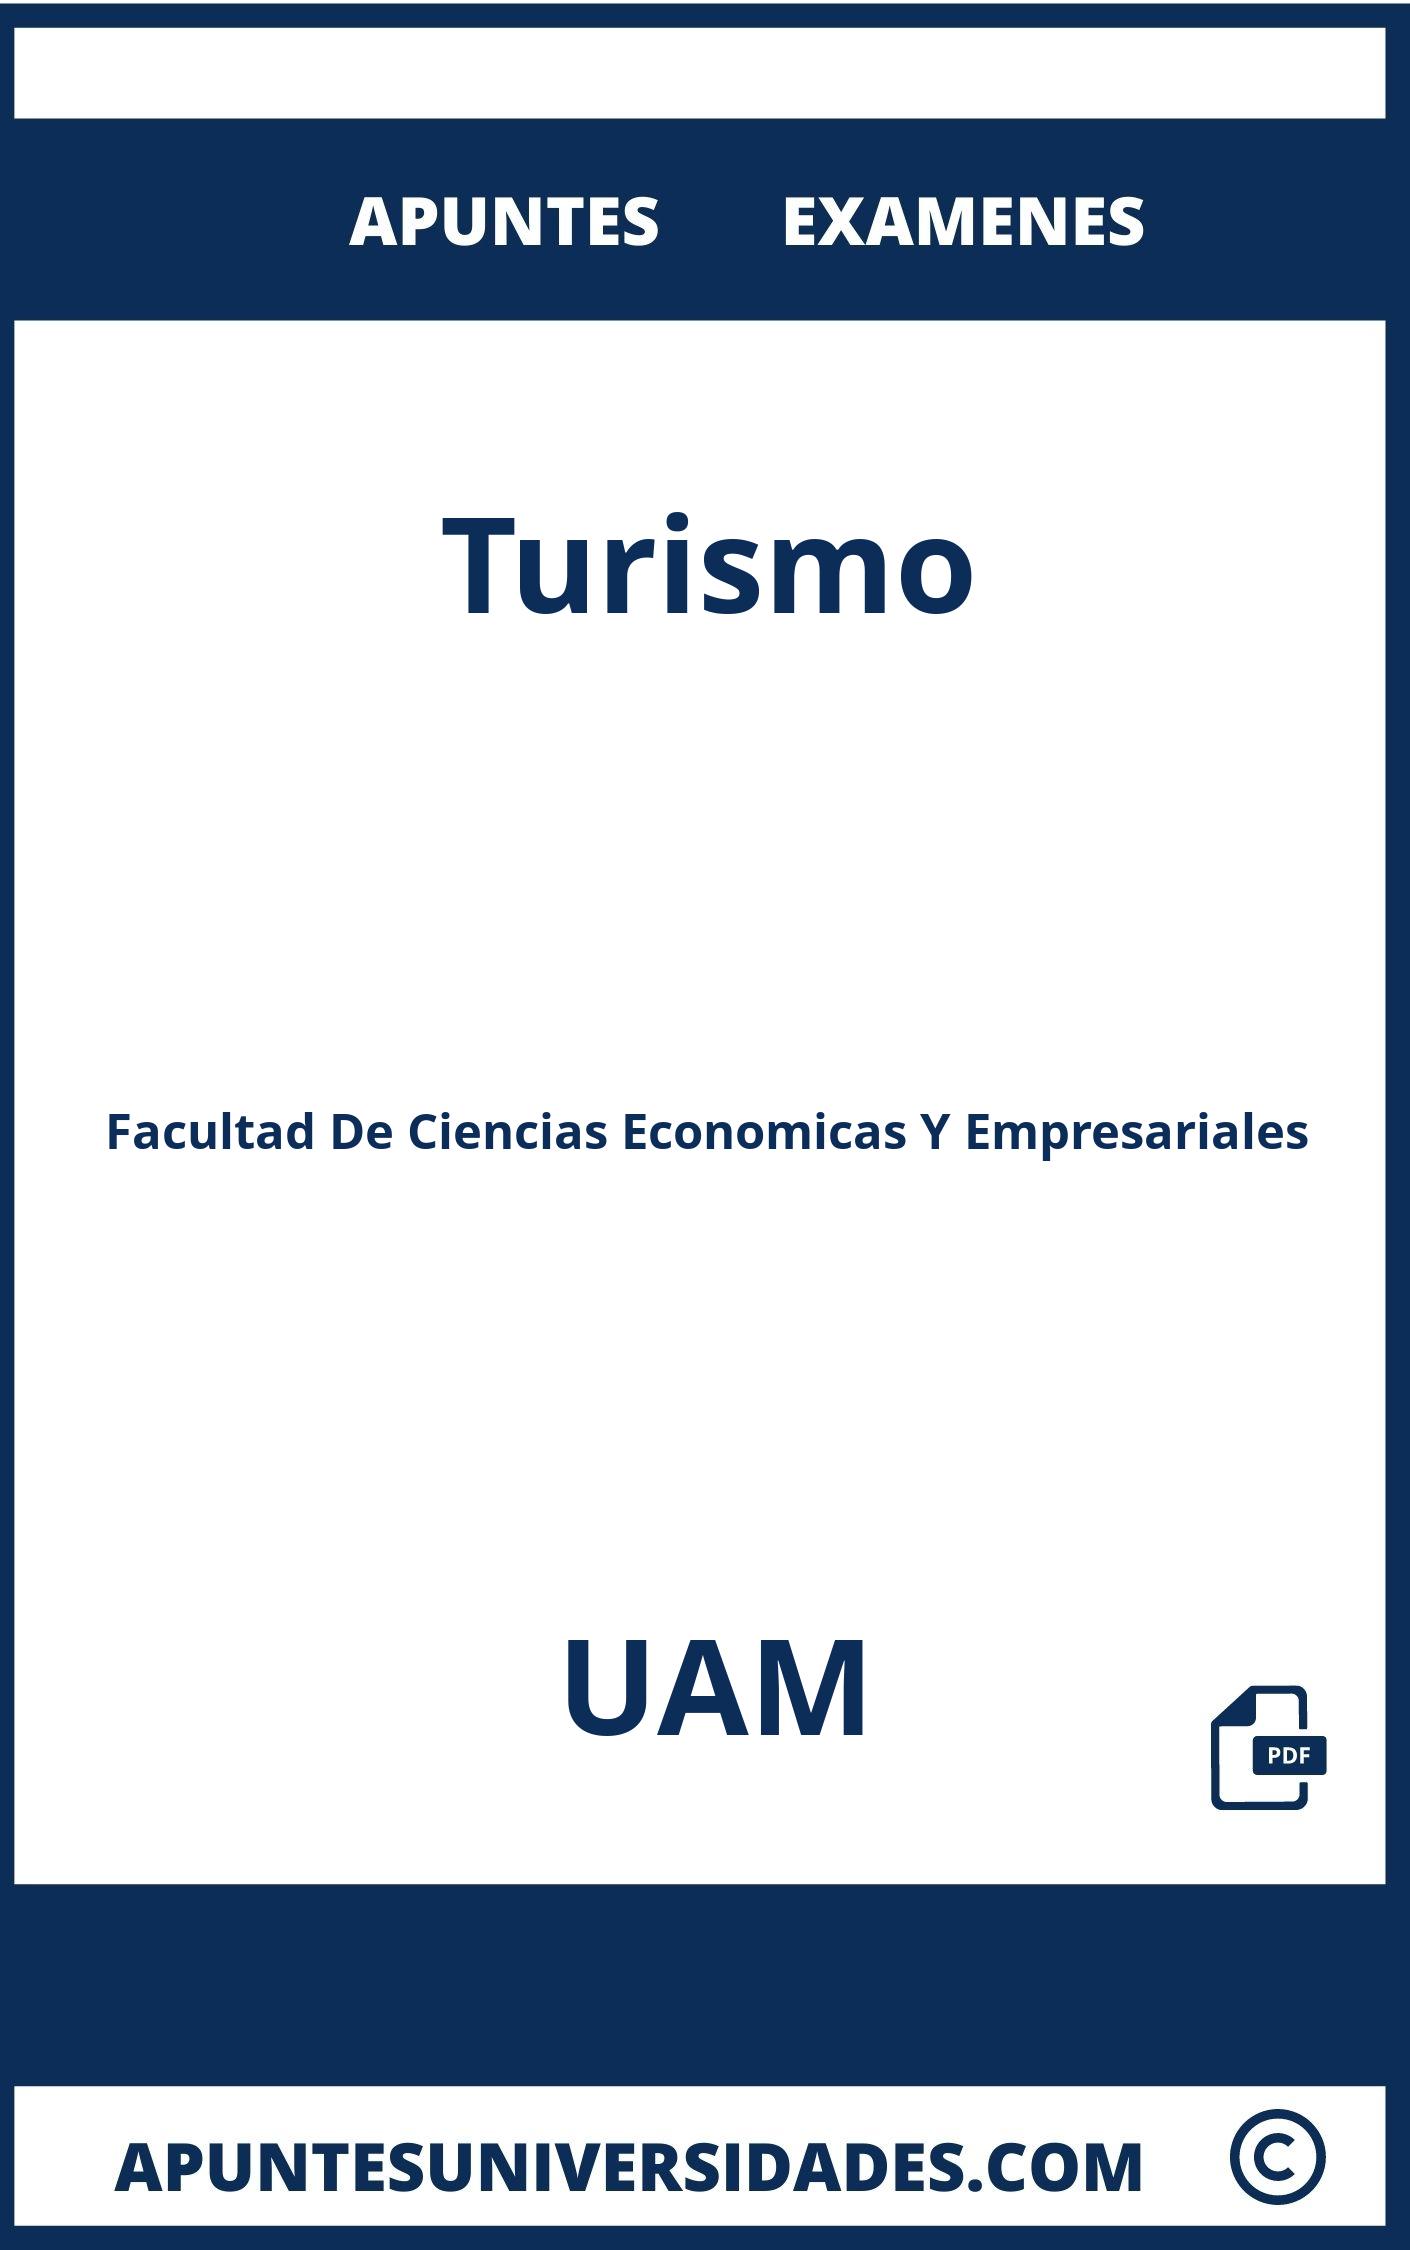 Turismo UAM Examenes Apuntes